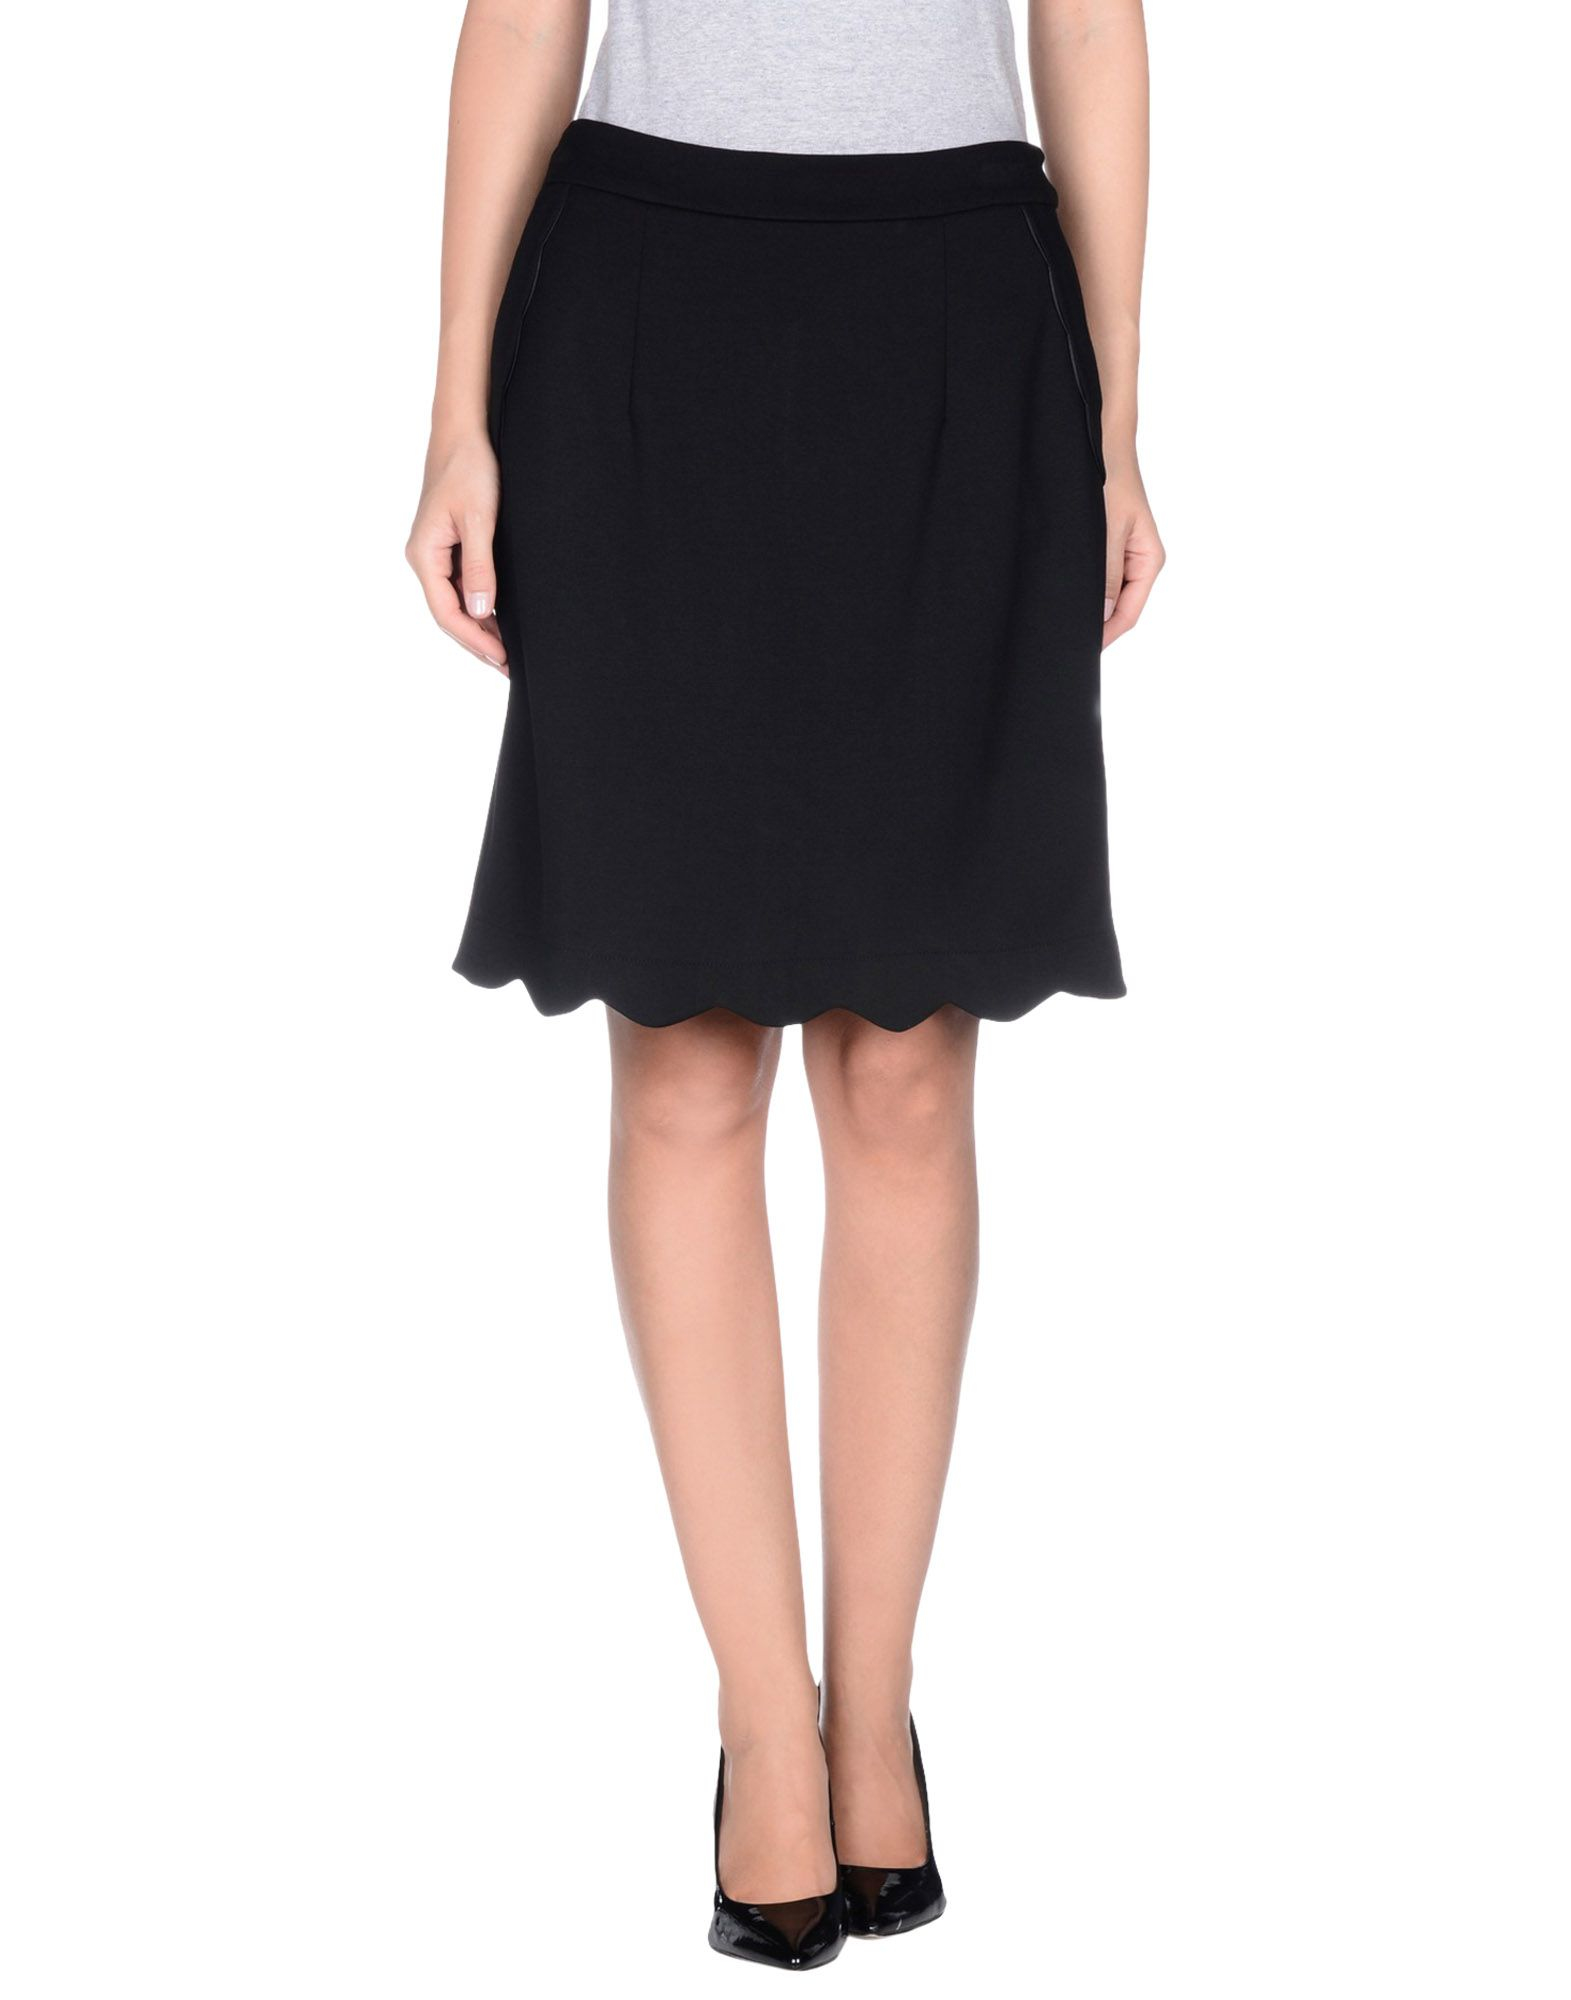 Darling Knee Length Skirt in Black | Lyst